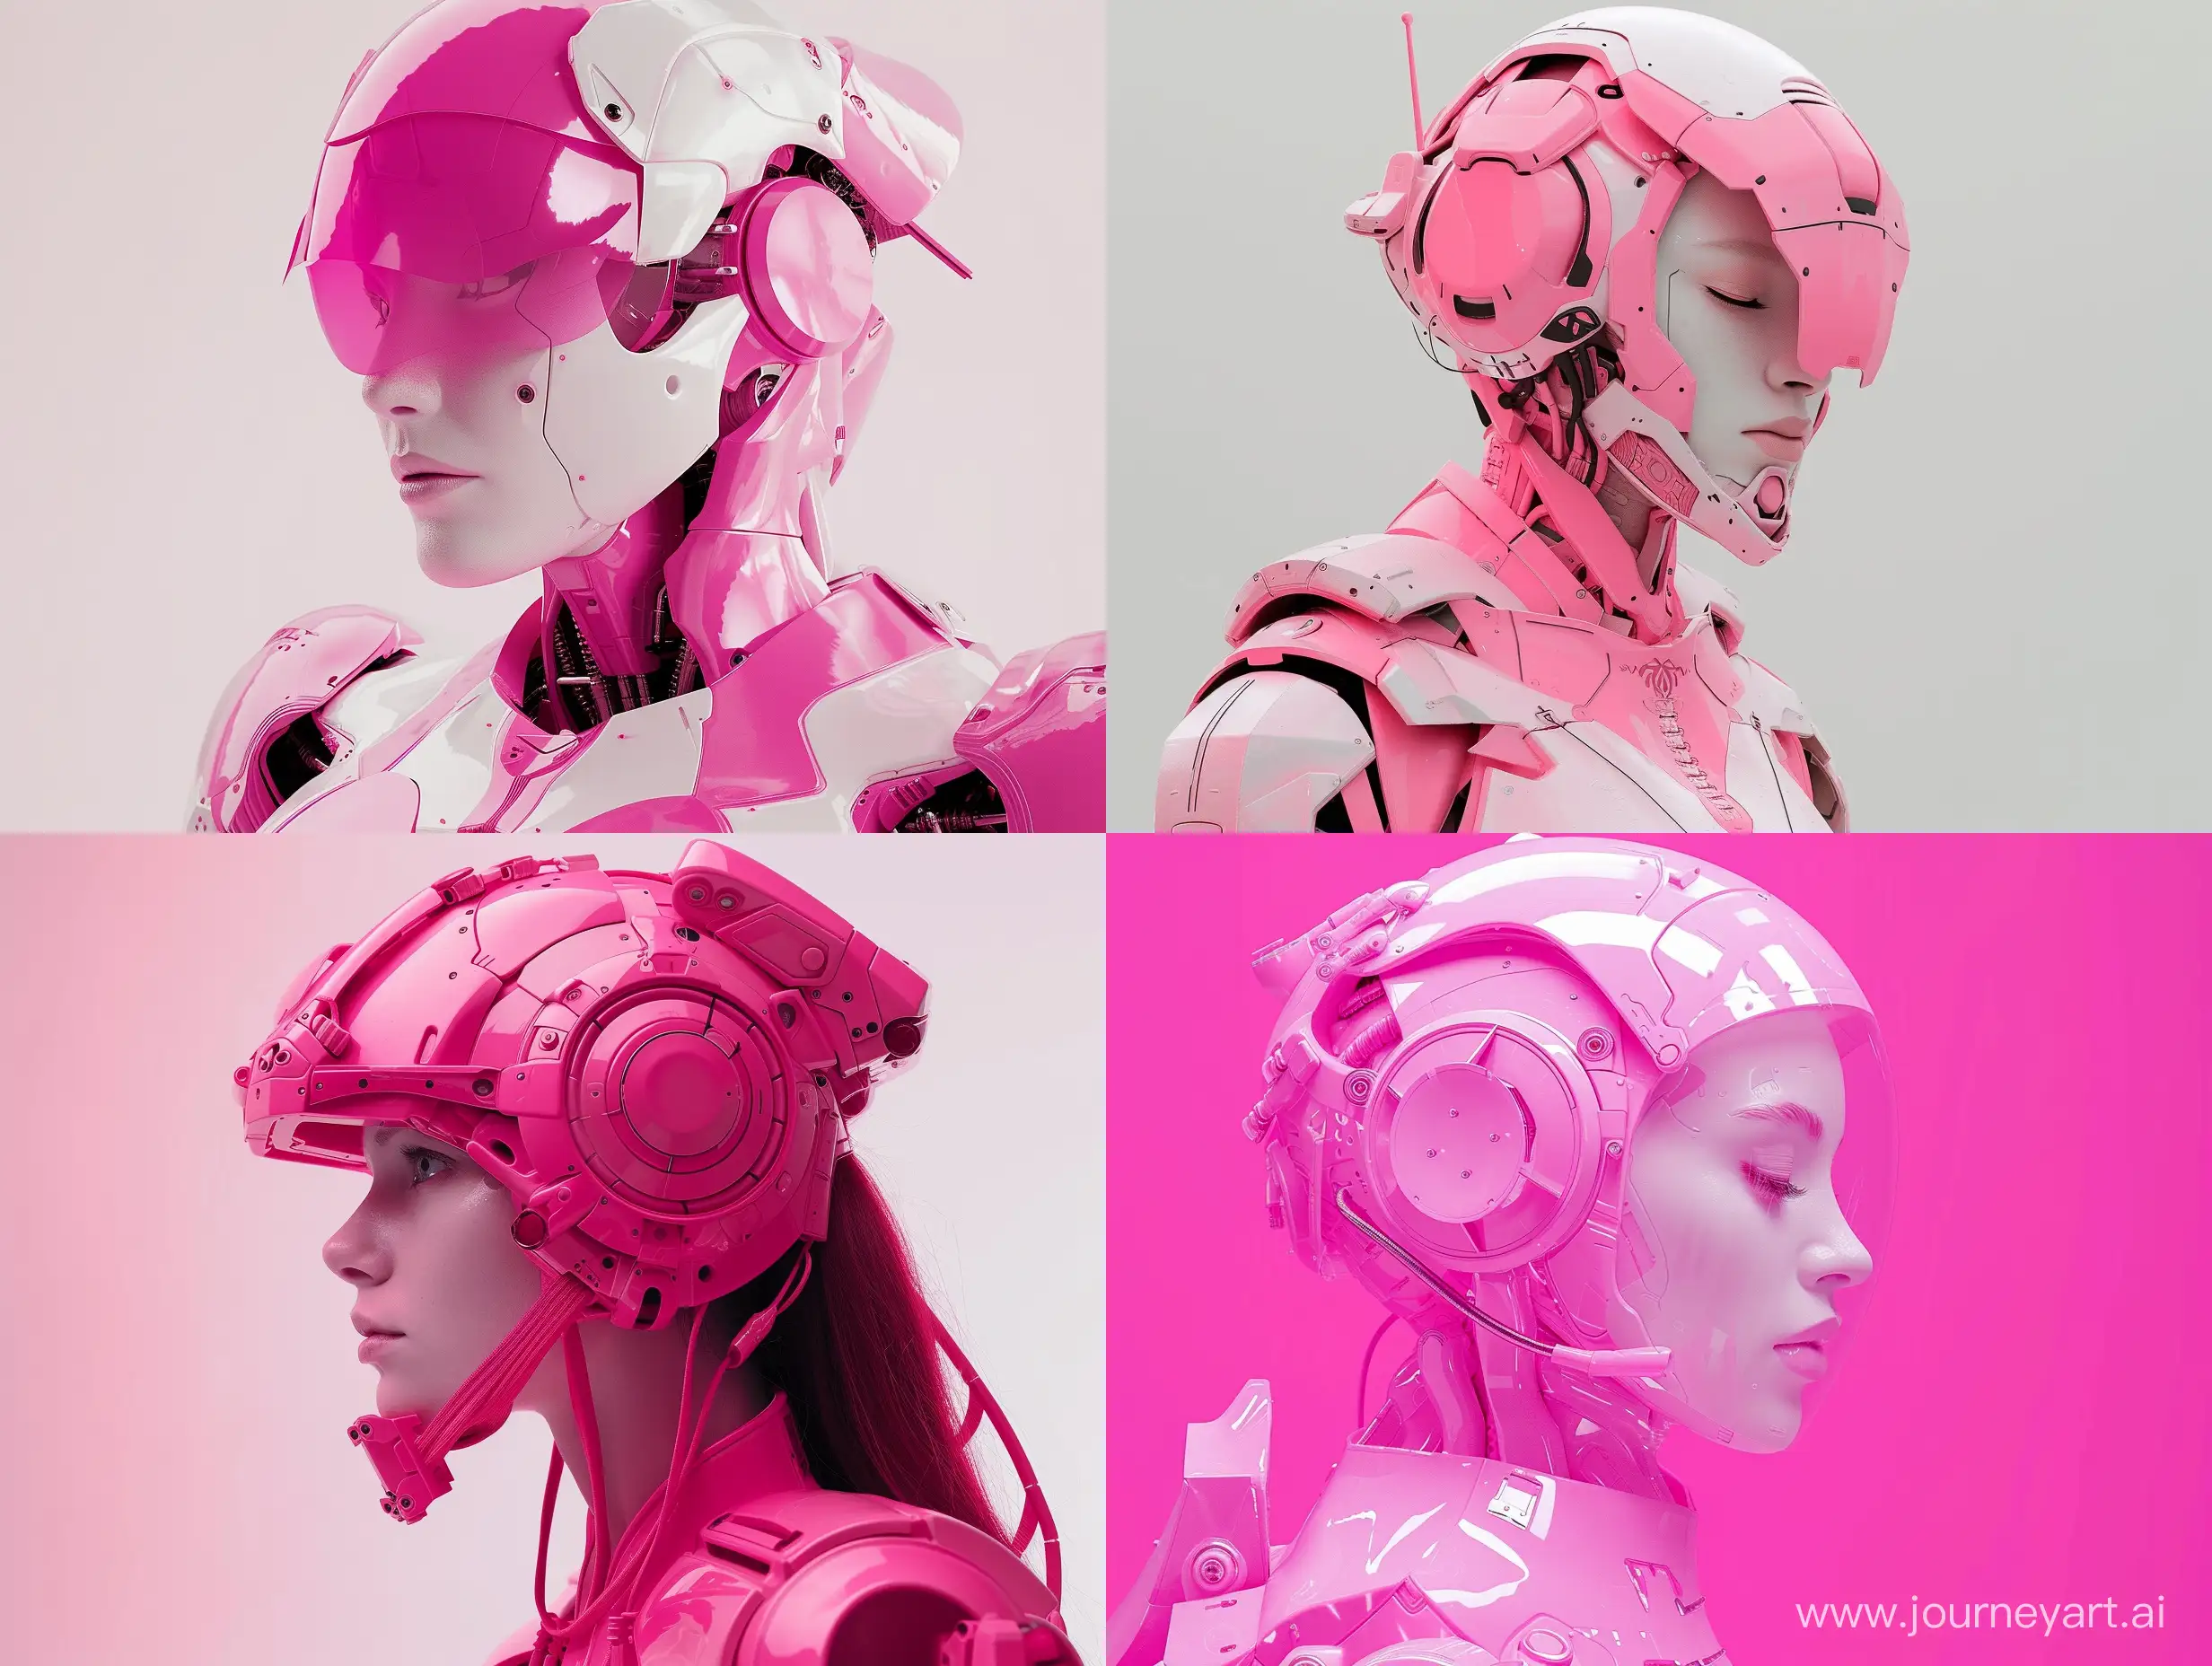 Мистическая роботоидная женщина в розовых тонах